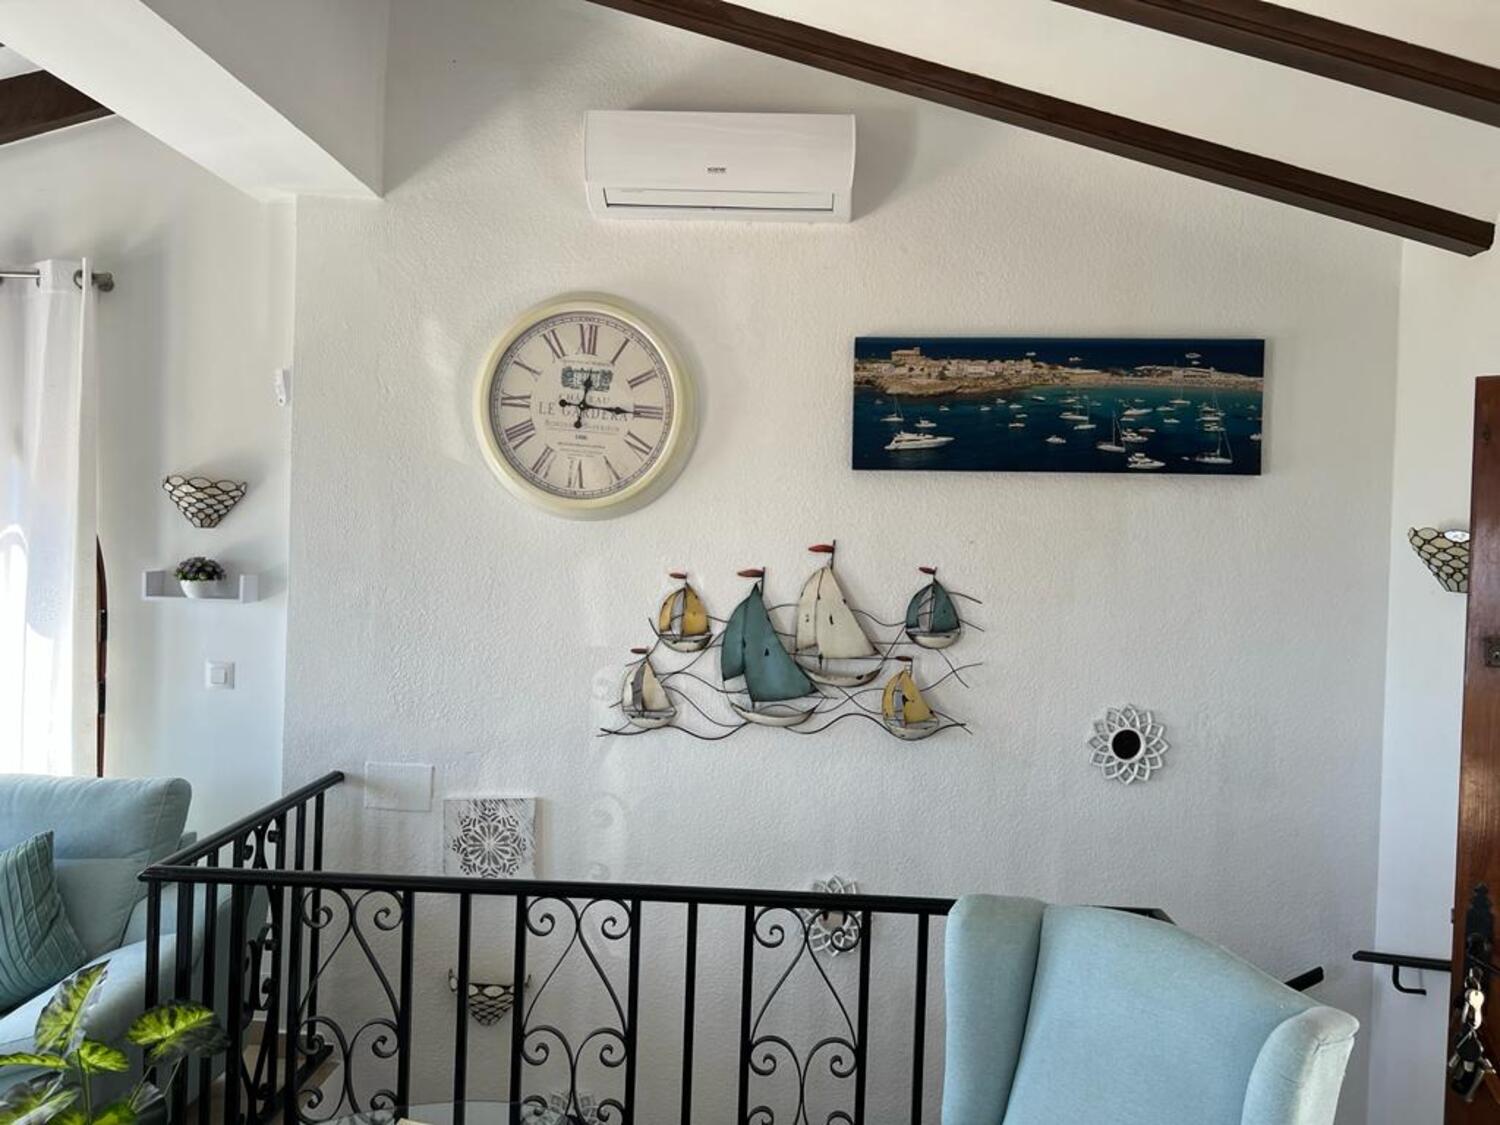 Moraira: Casa adosada con vistas panorámicas al mar